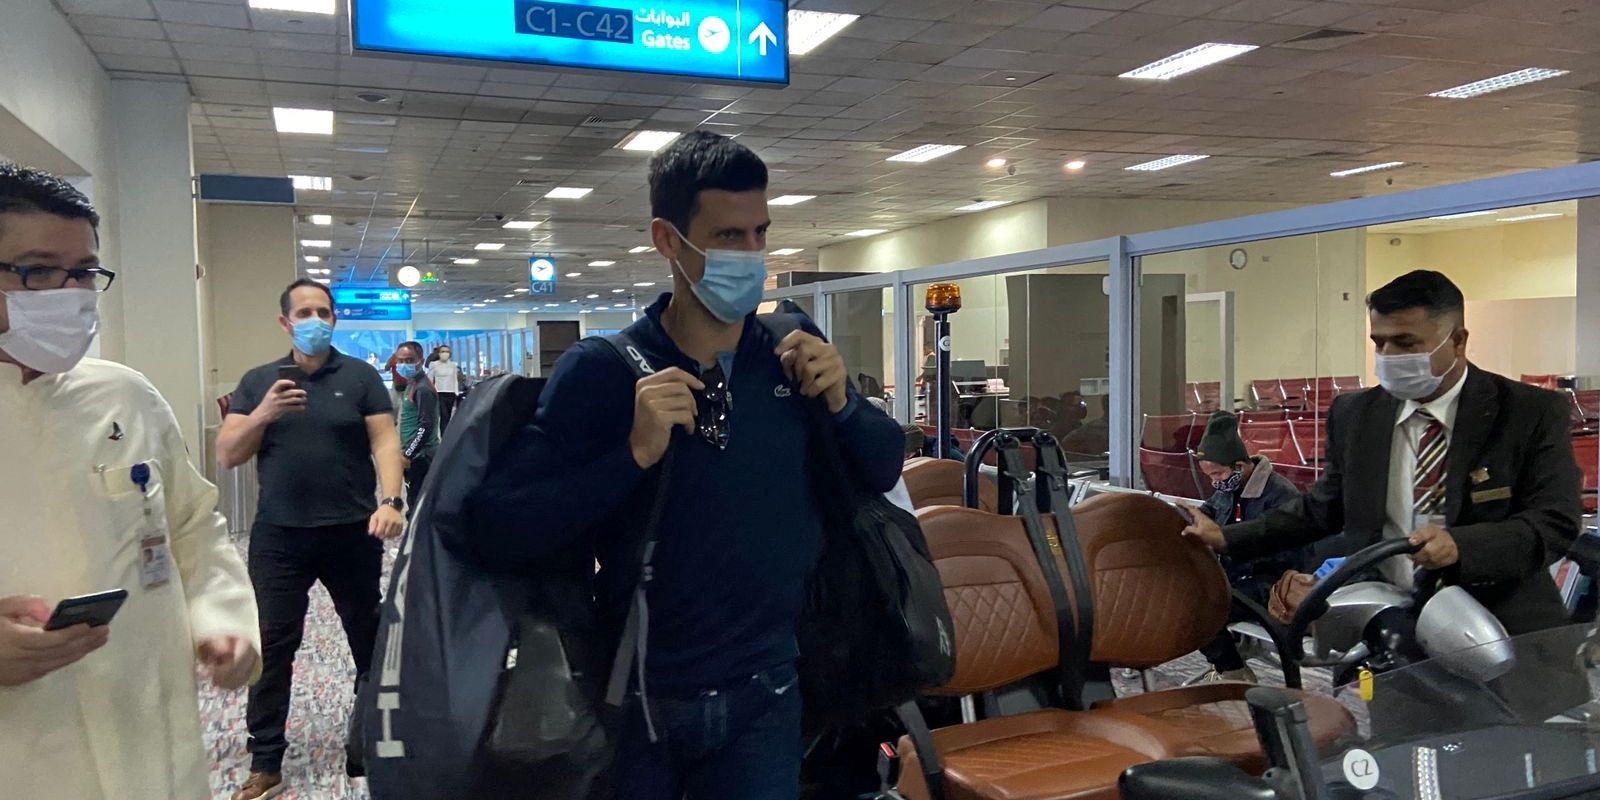 Tenista Novak Djokovic chega a Dubai, nos Emirados Árabes Unidos, após ter seu visto cancelado na Austrália - sérvio